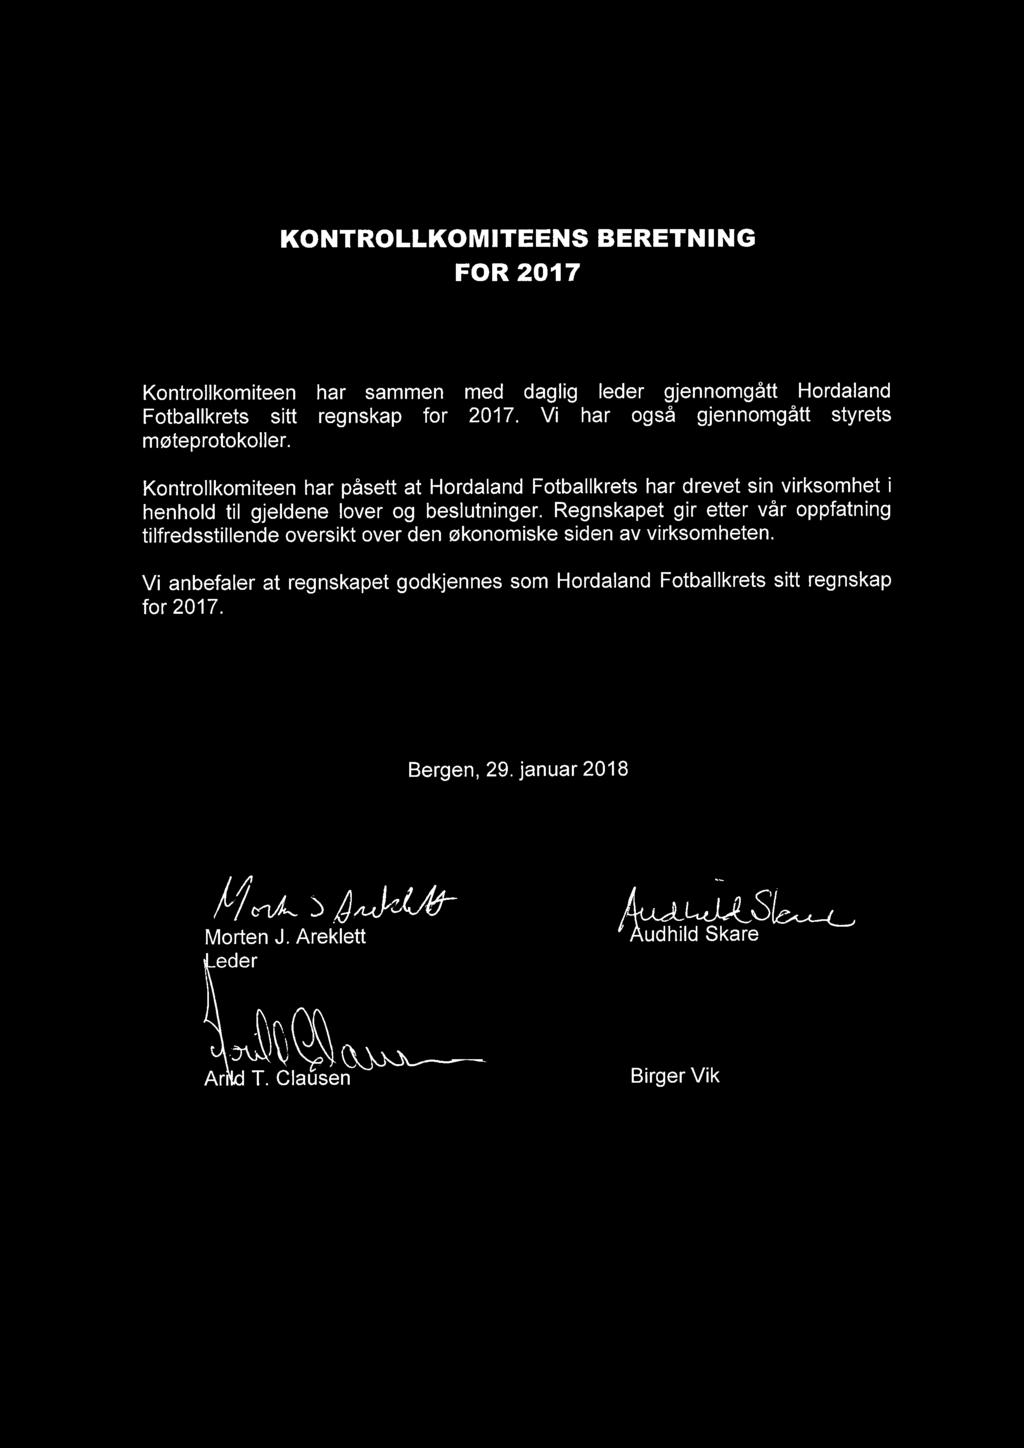 Kontrollkomiteen har påsett at Hordaland Fotballkrets har drevet sin virksomhet i henhold til gjeldene lover og beslutninger.